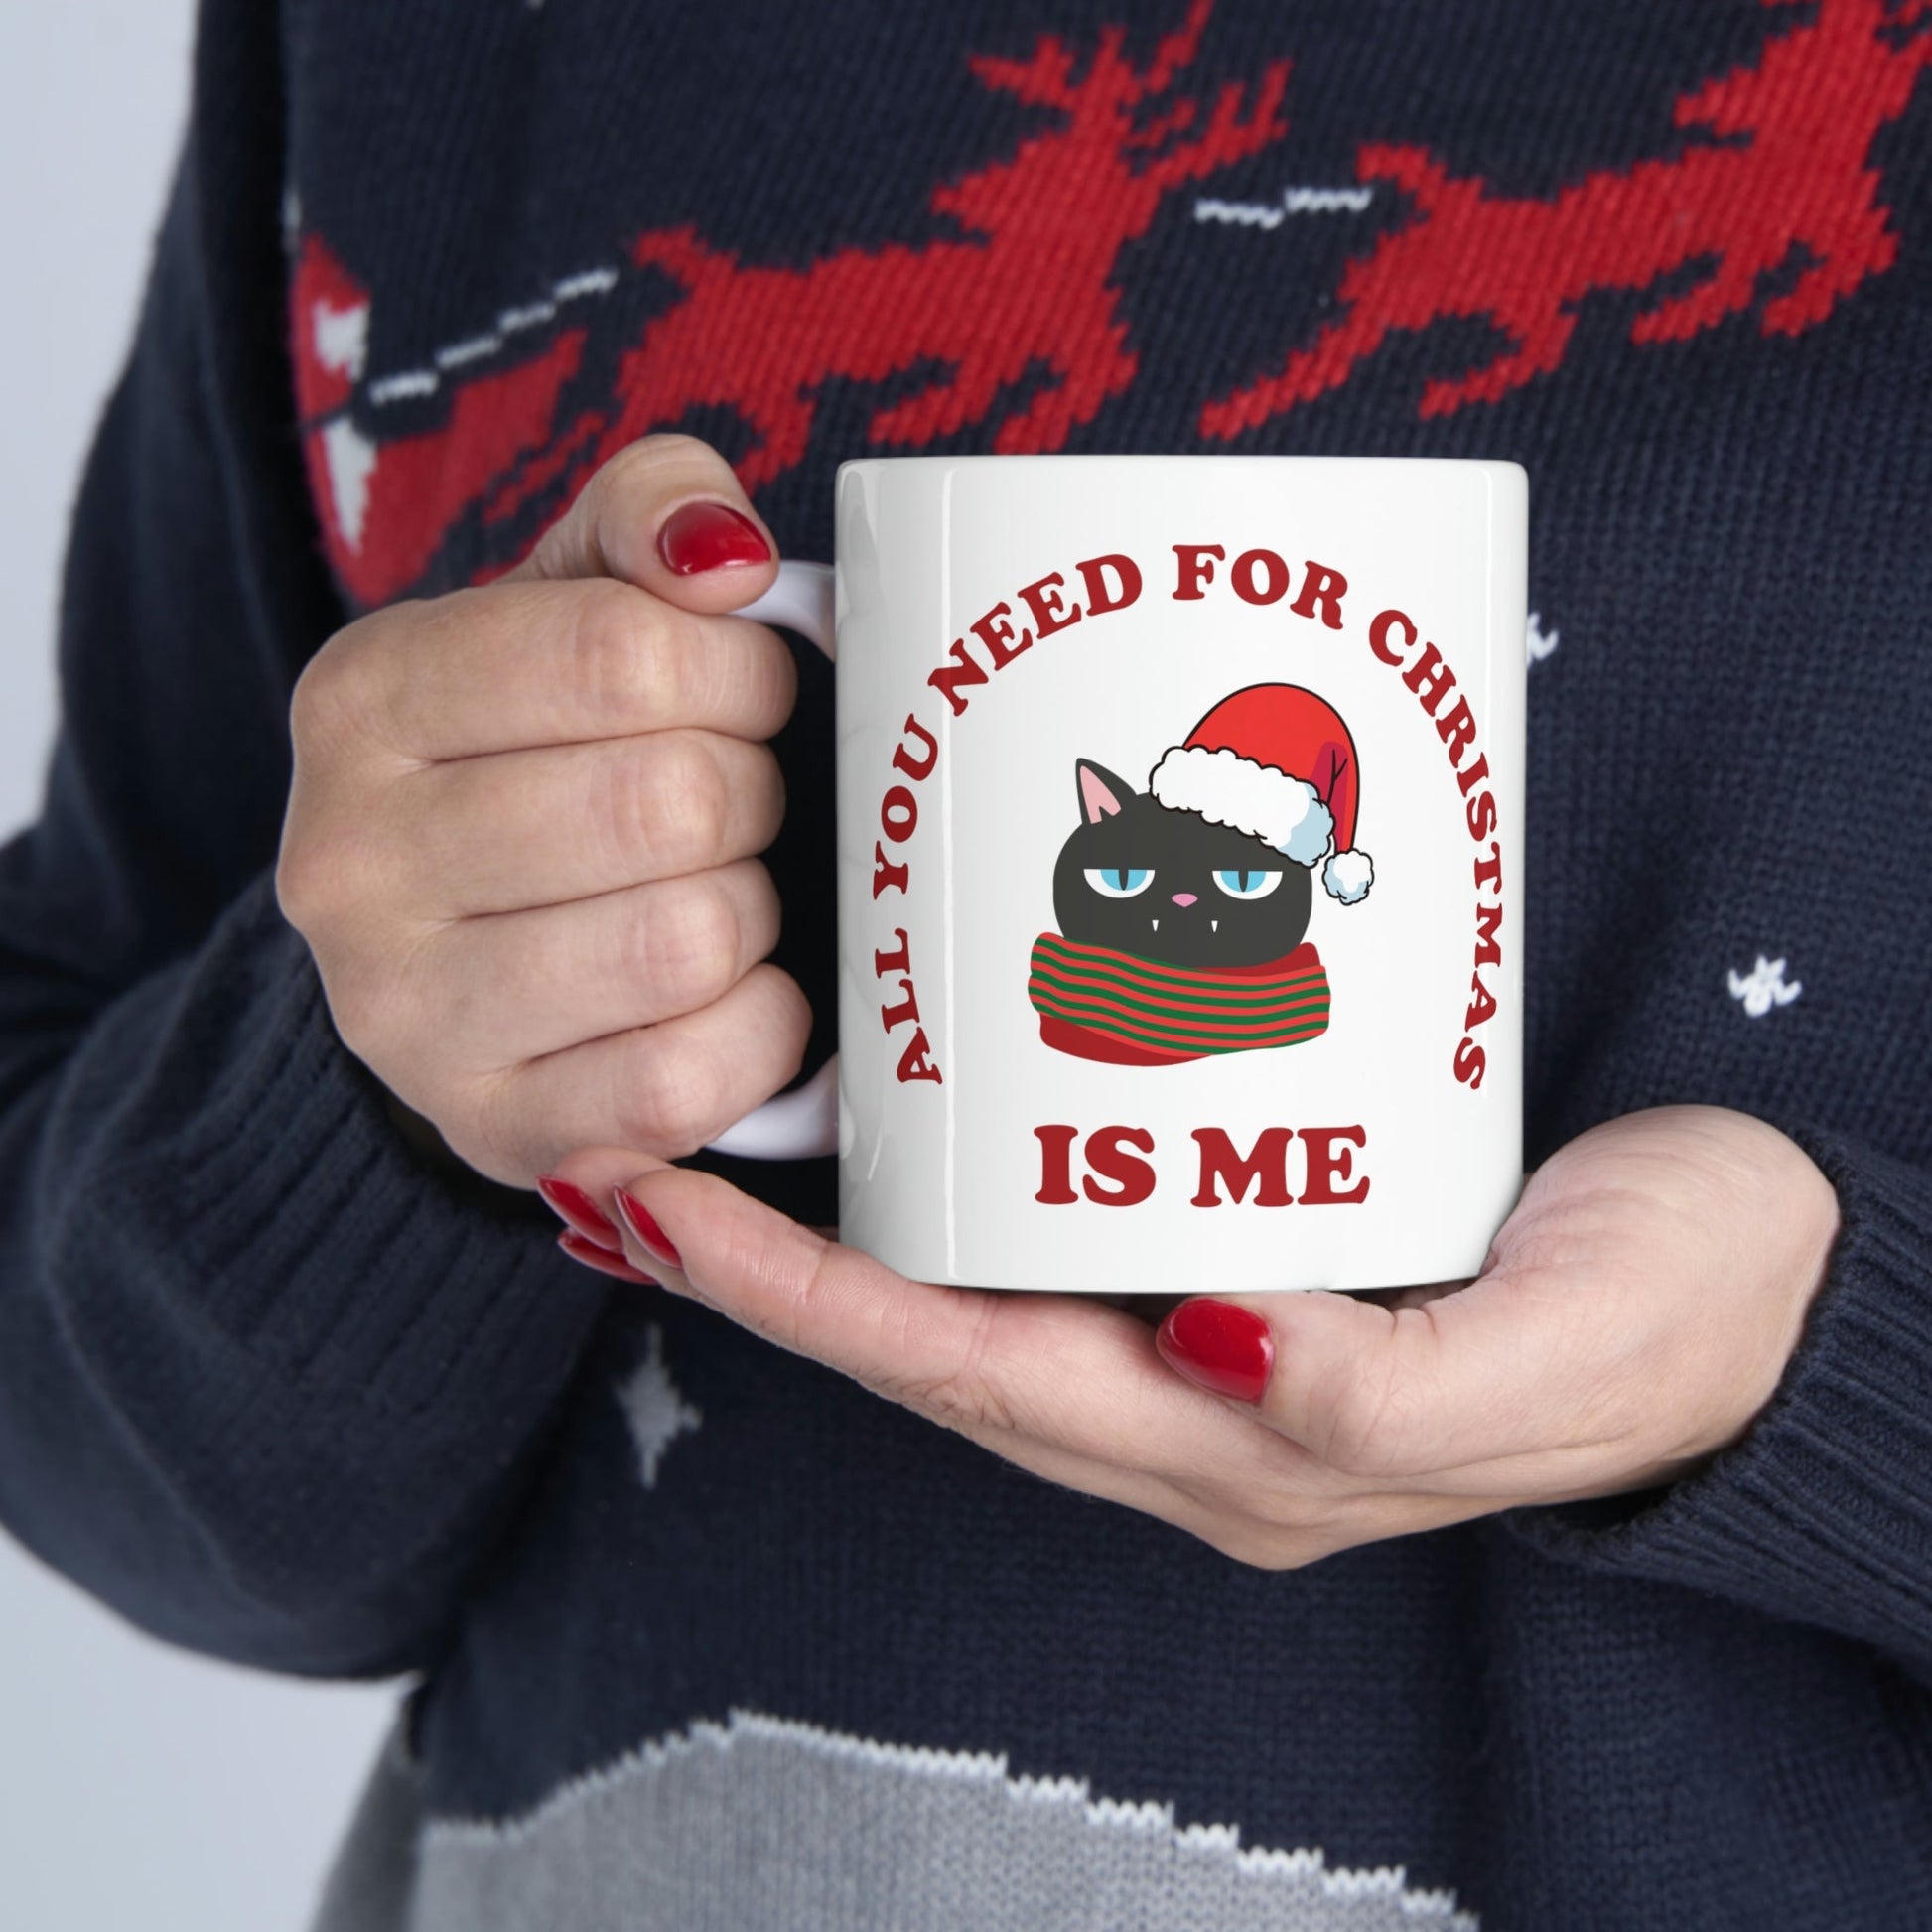 All You Need for Christmas is Me Grumpy Cat Ceramic Mug 11oz Ichaku [Perfect Gifts Selection]